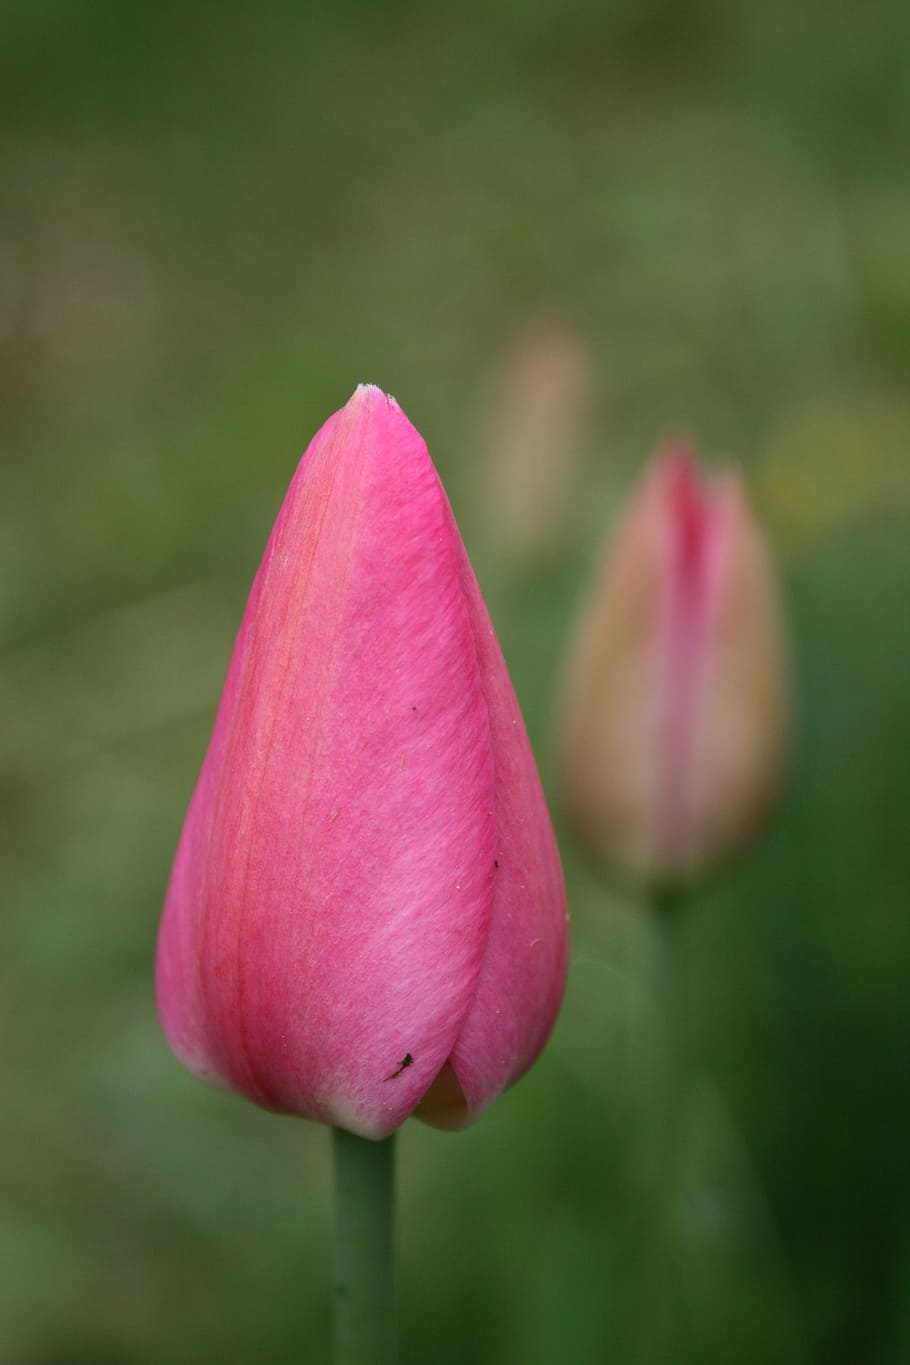 Tulip, Bunga, Merah Muda, Lembut, kuncup, warna merah muda, daun bunga, alam, kerapuhan, pertumbuhan